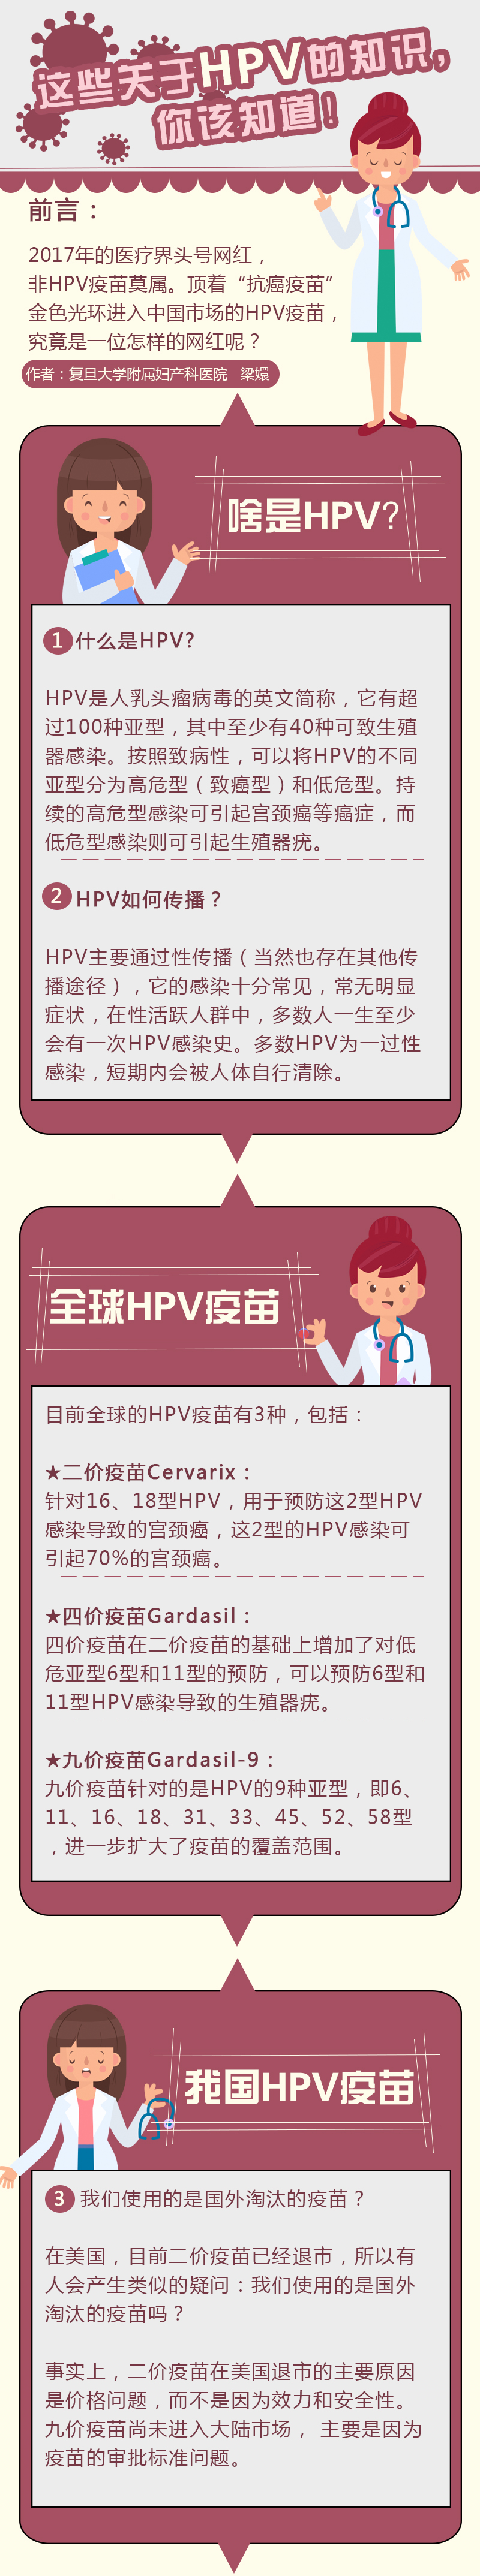 HPV-11.jpg